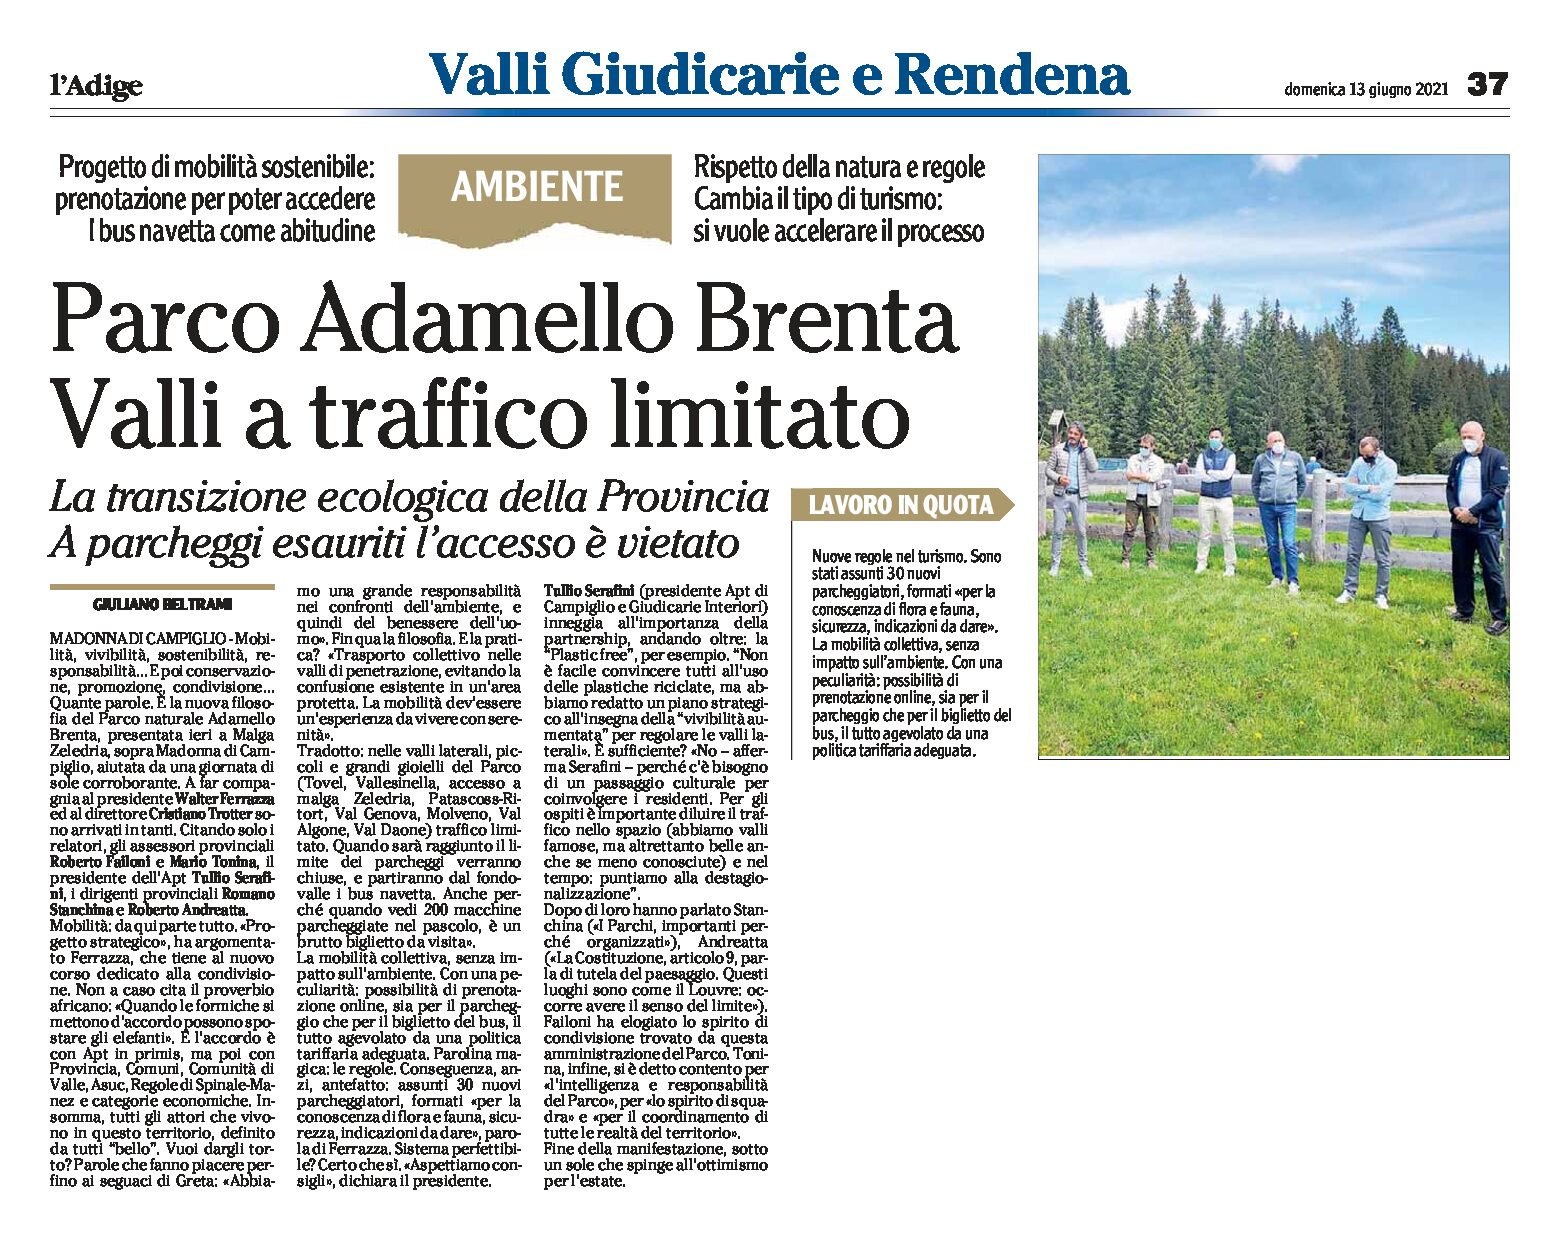 Parco Adamello Brenta: valli a traffico limitato